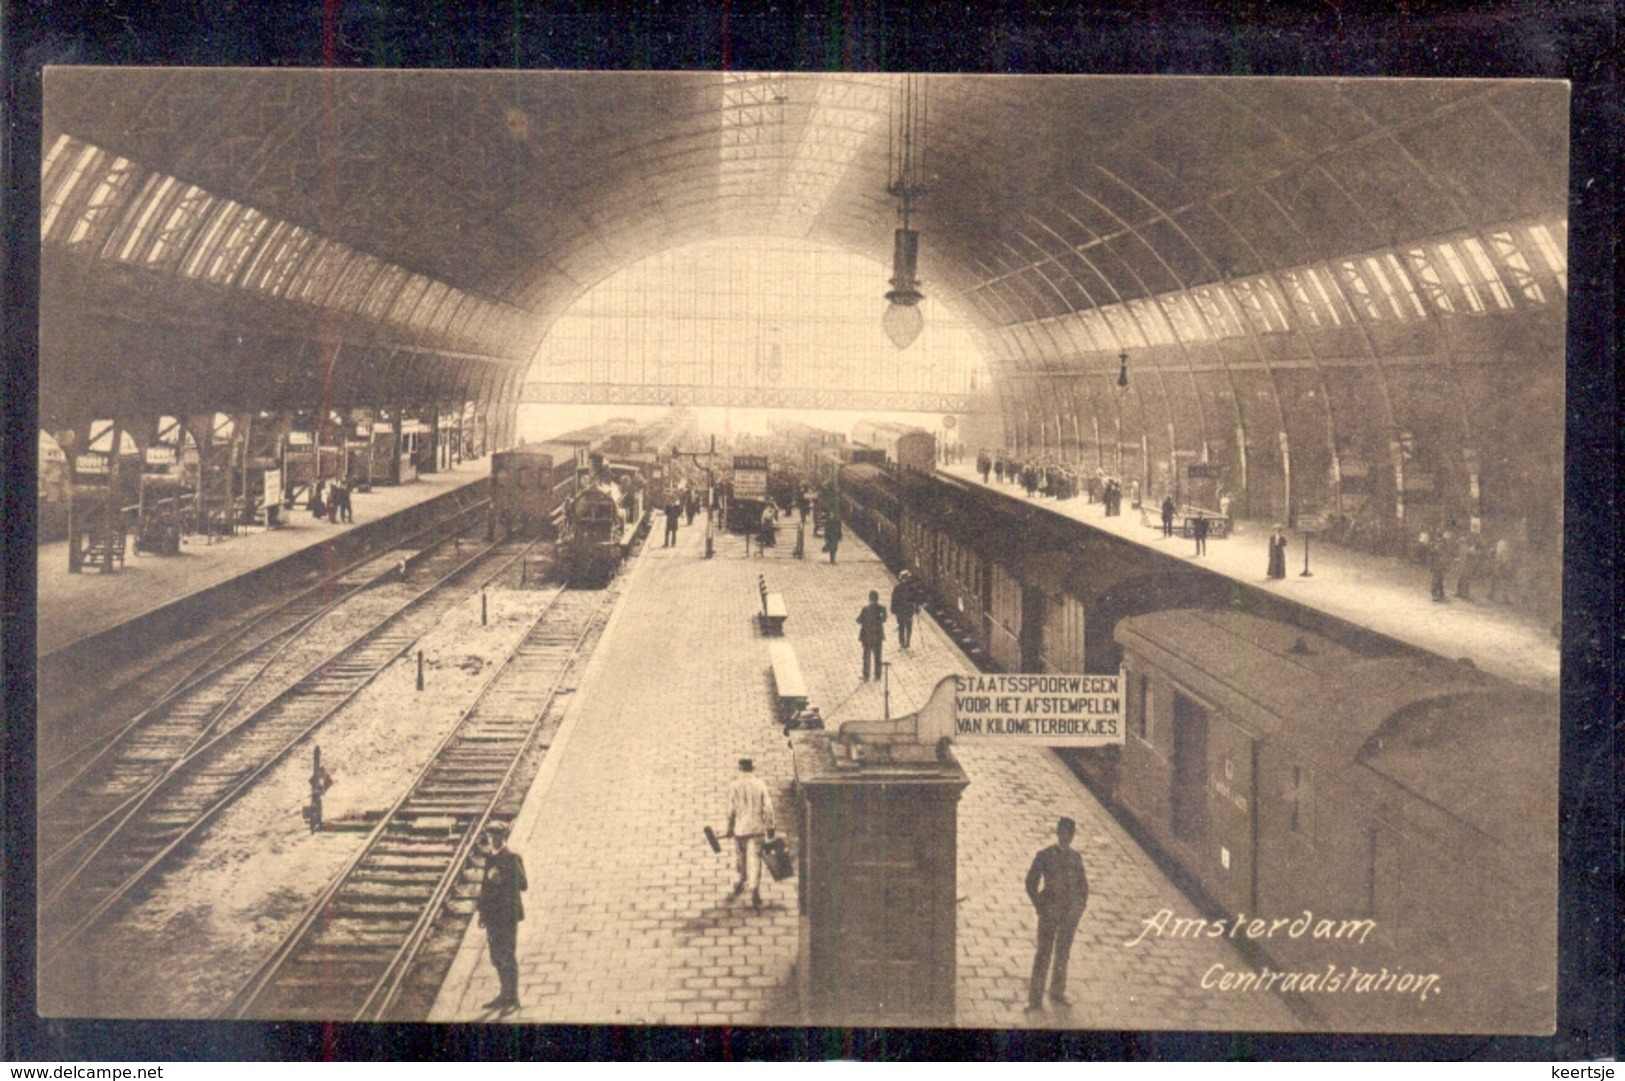 Amsterdam - Centraalstation - Staatspoorwegen Afstempel 1912 - Amsterdam